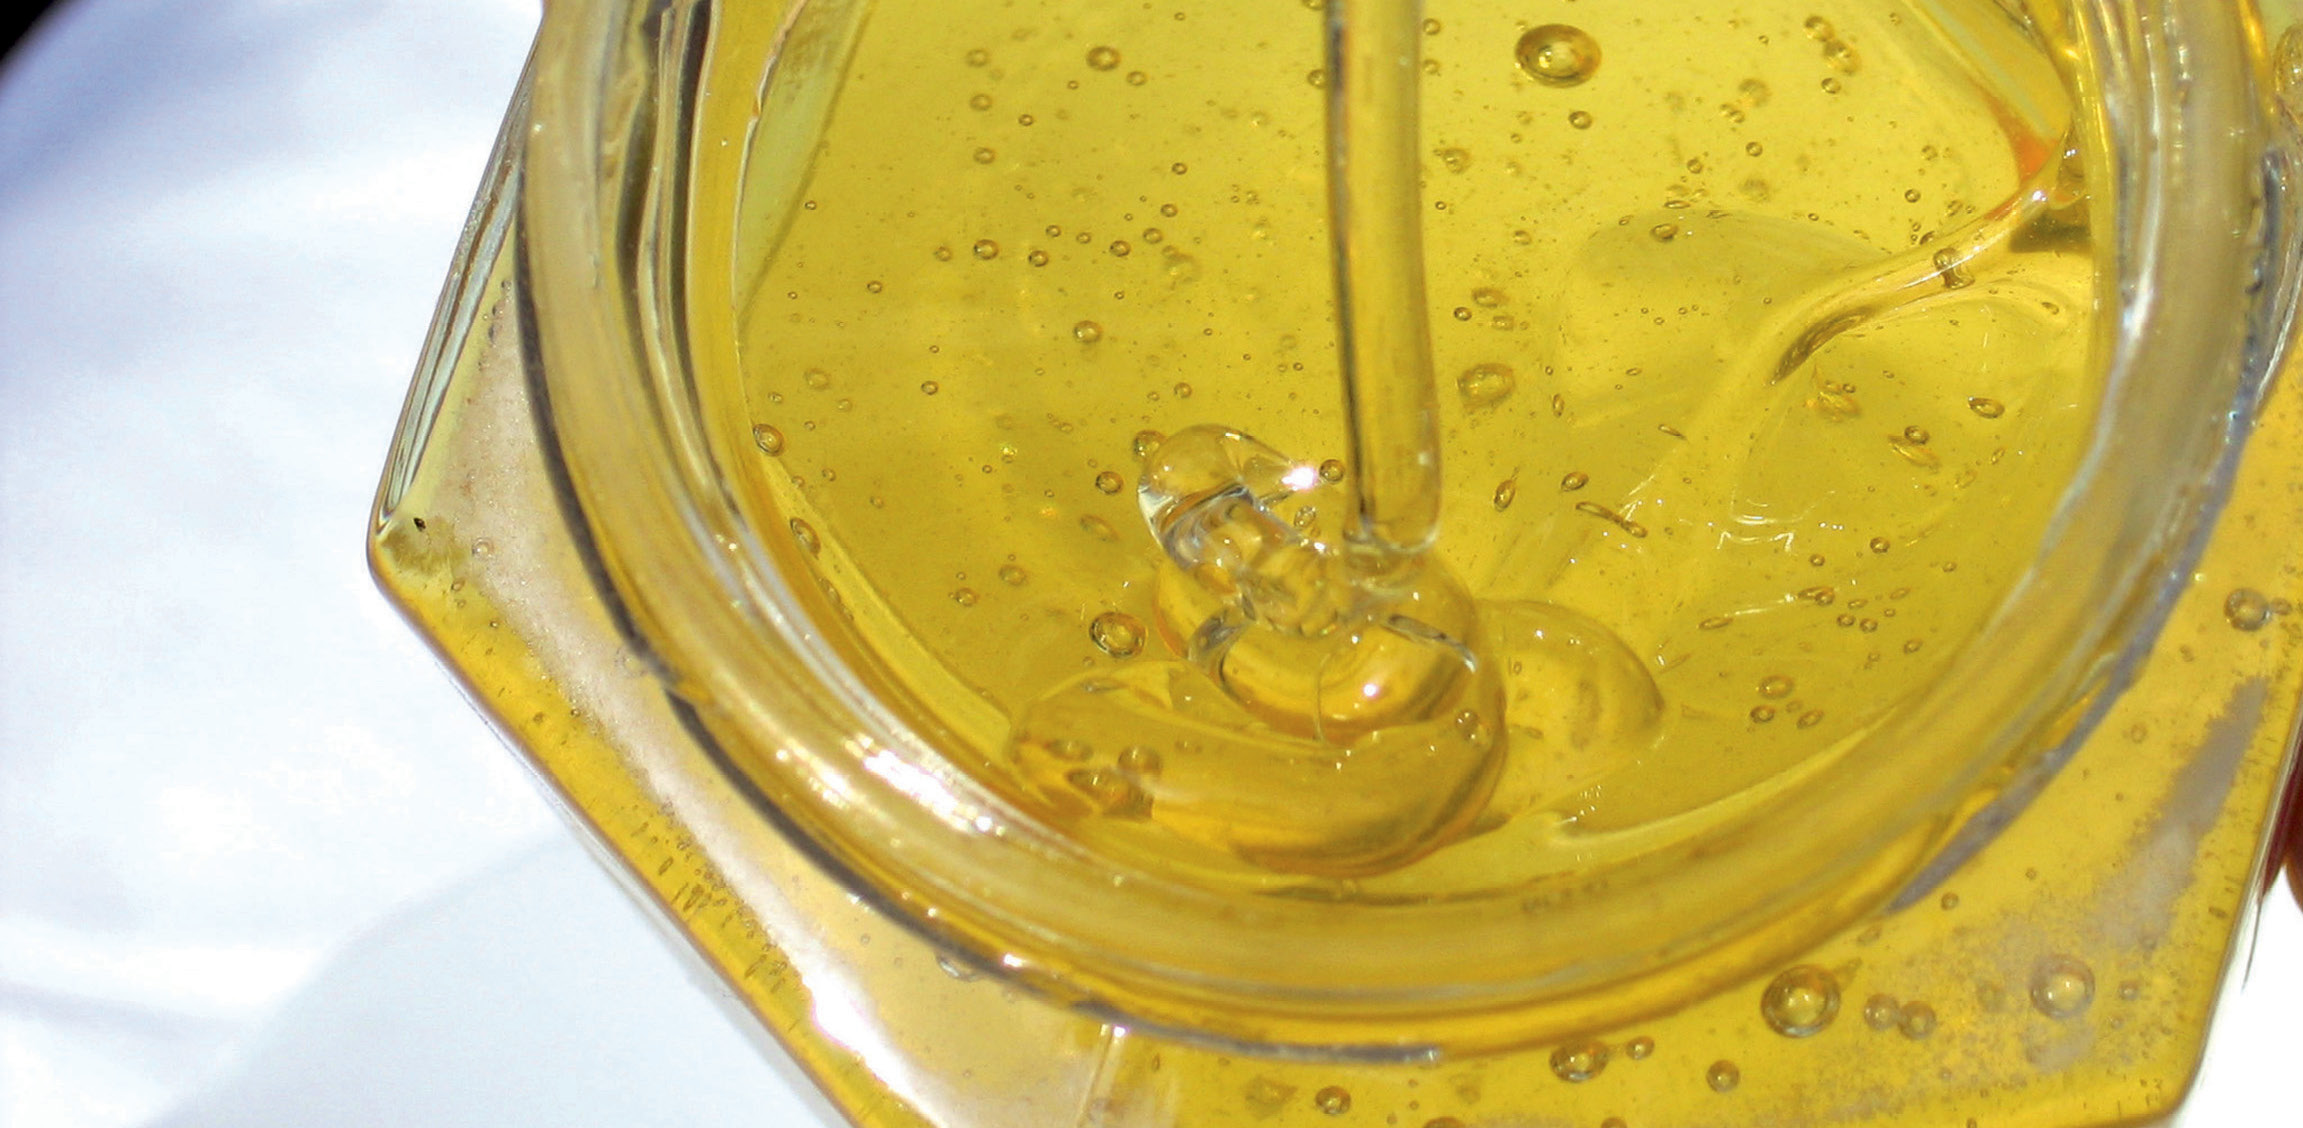 Proteine și activitate enzimatică în miere